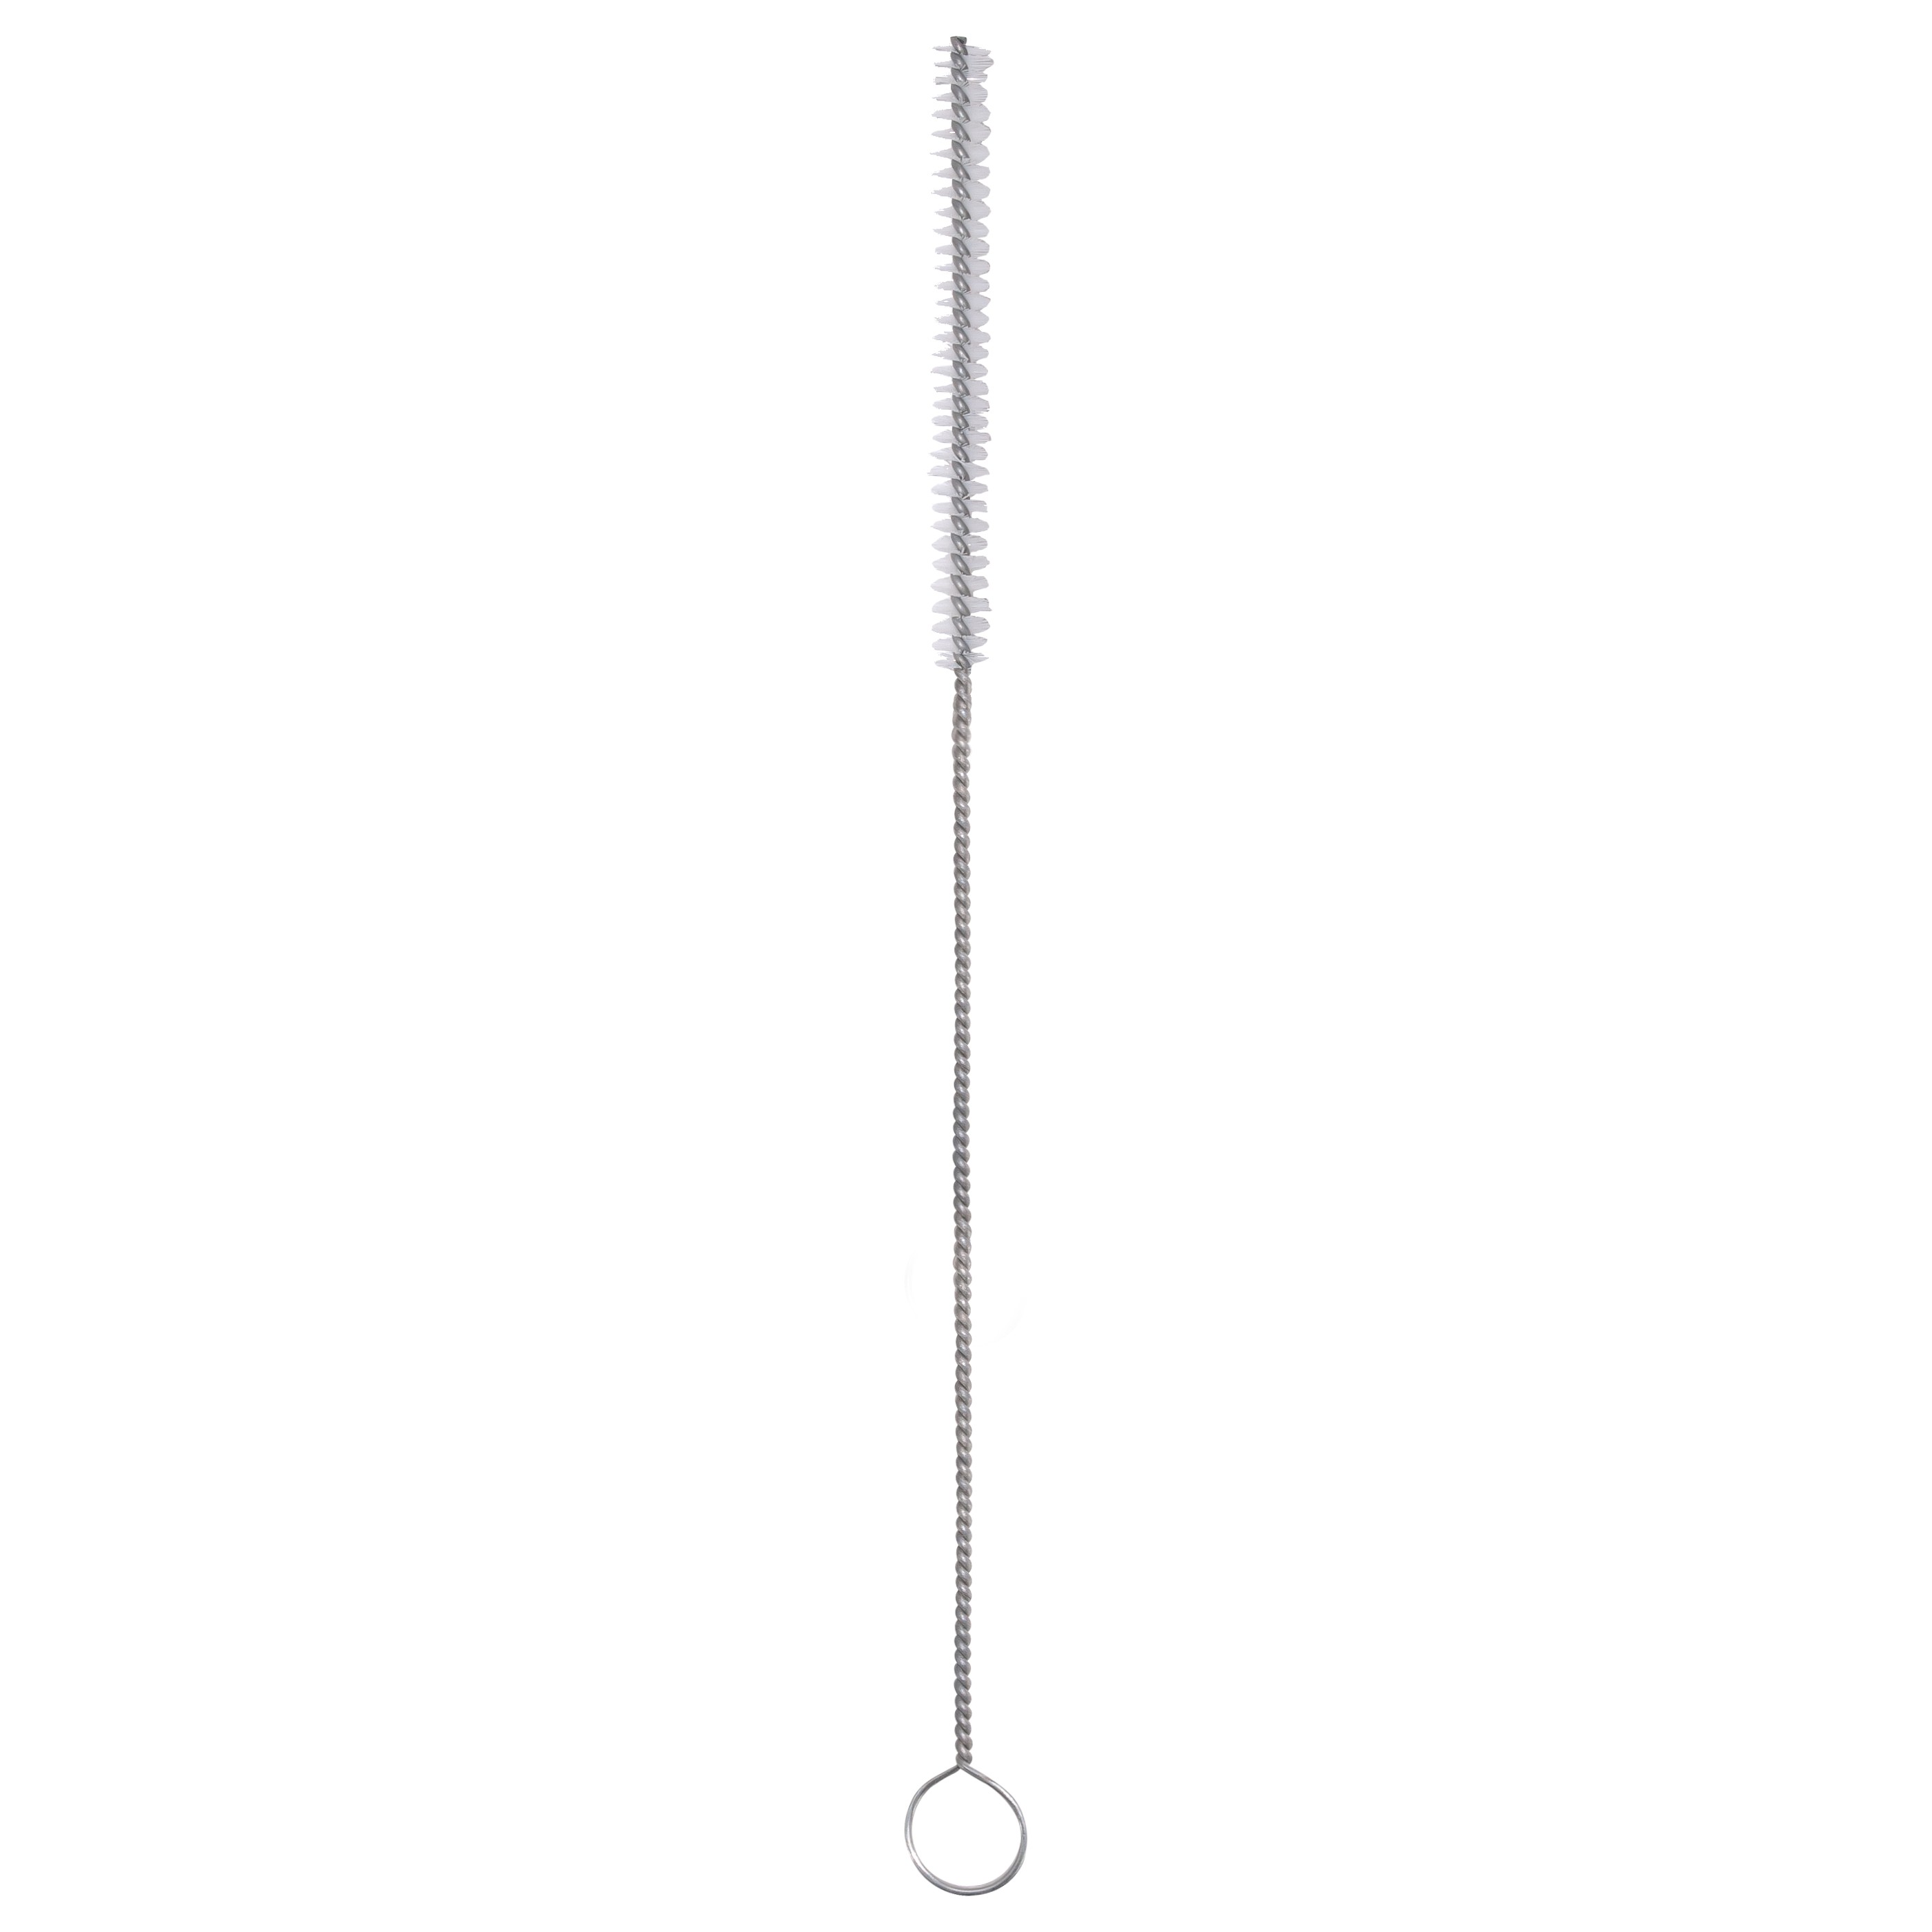 Nylon Bristle Tube Brush - 1/2" Diameter x 16" Length